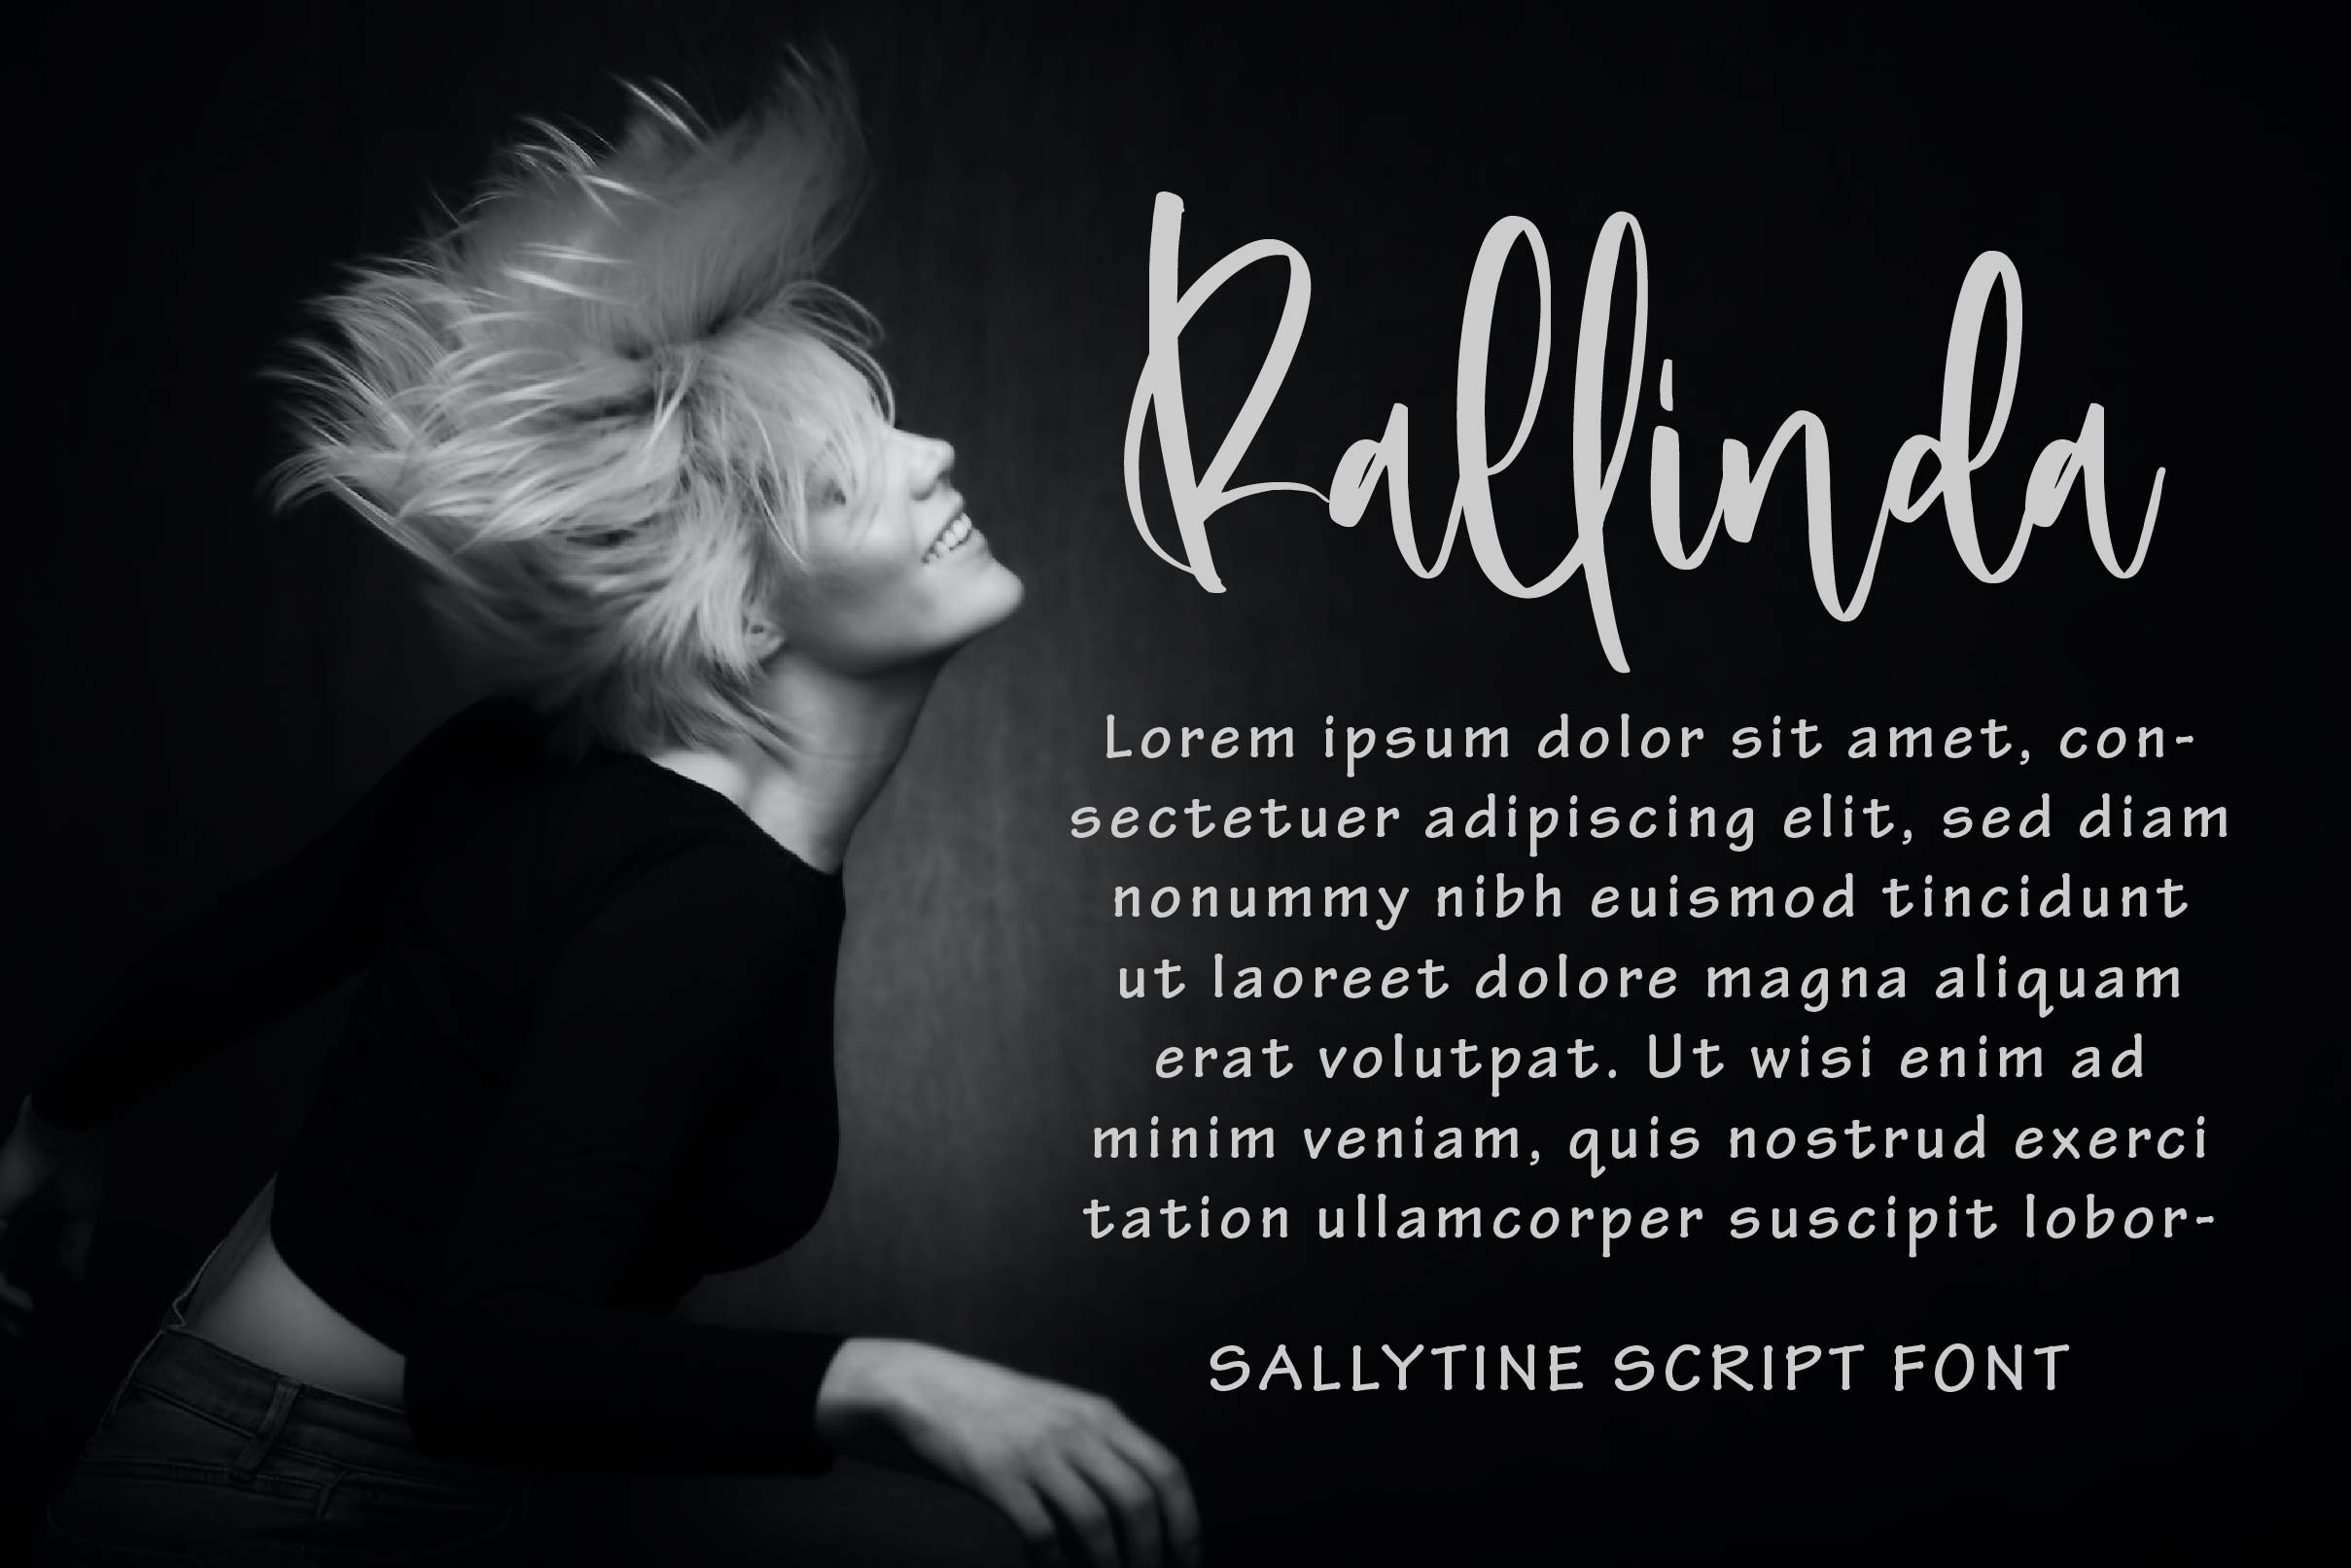 Sallytine